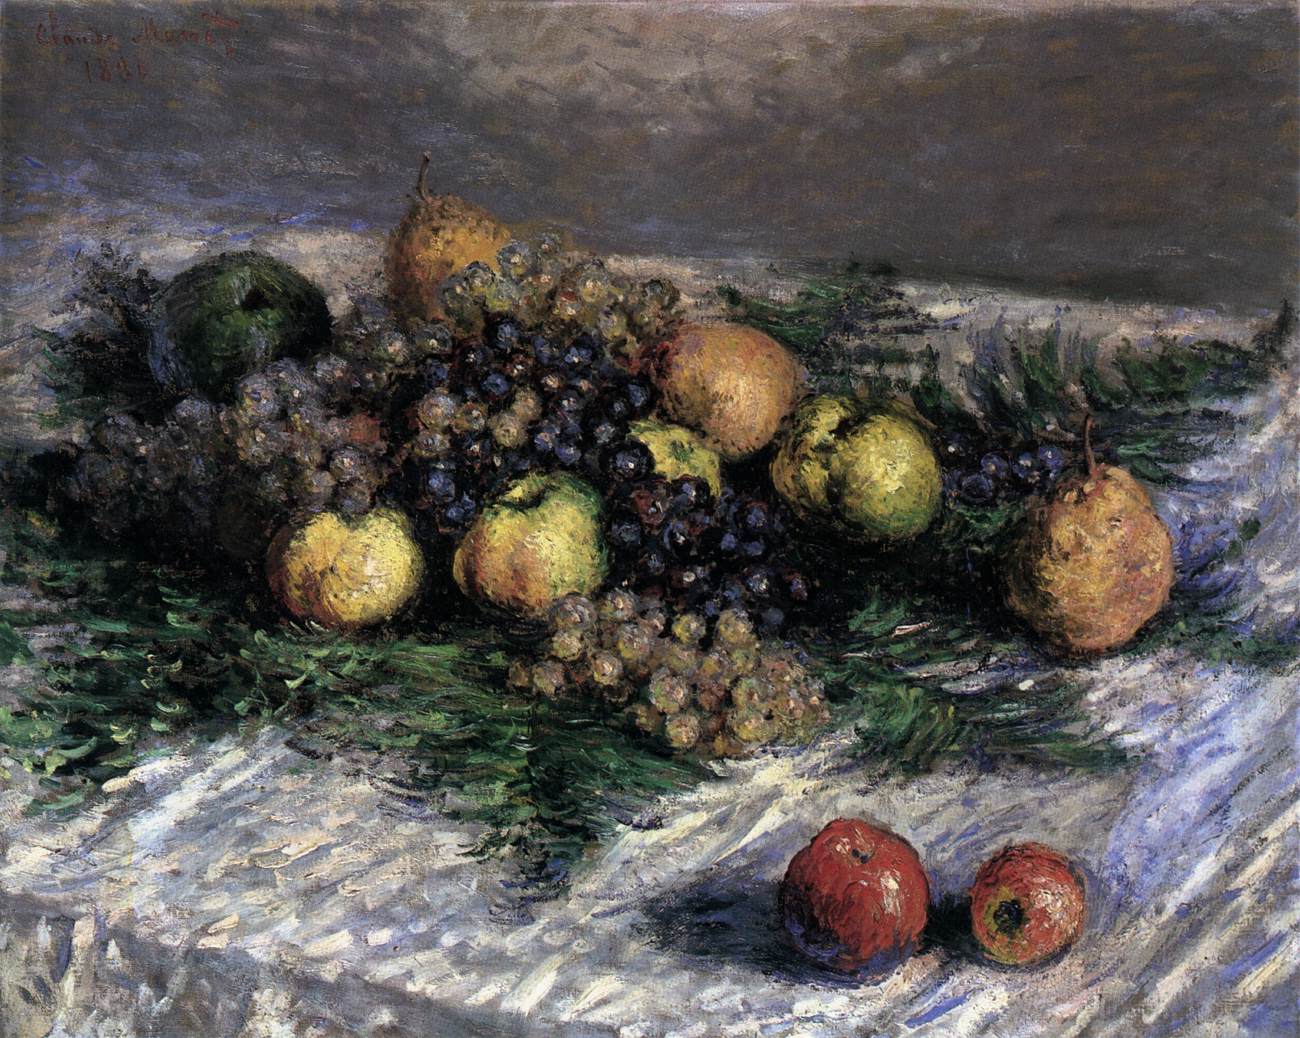 Bodegón de Pears et Grapes